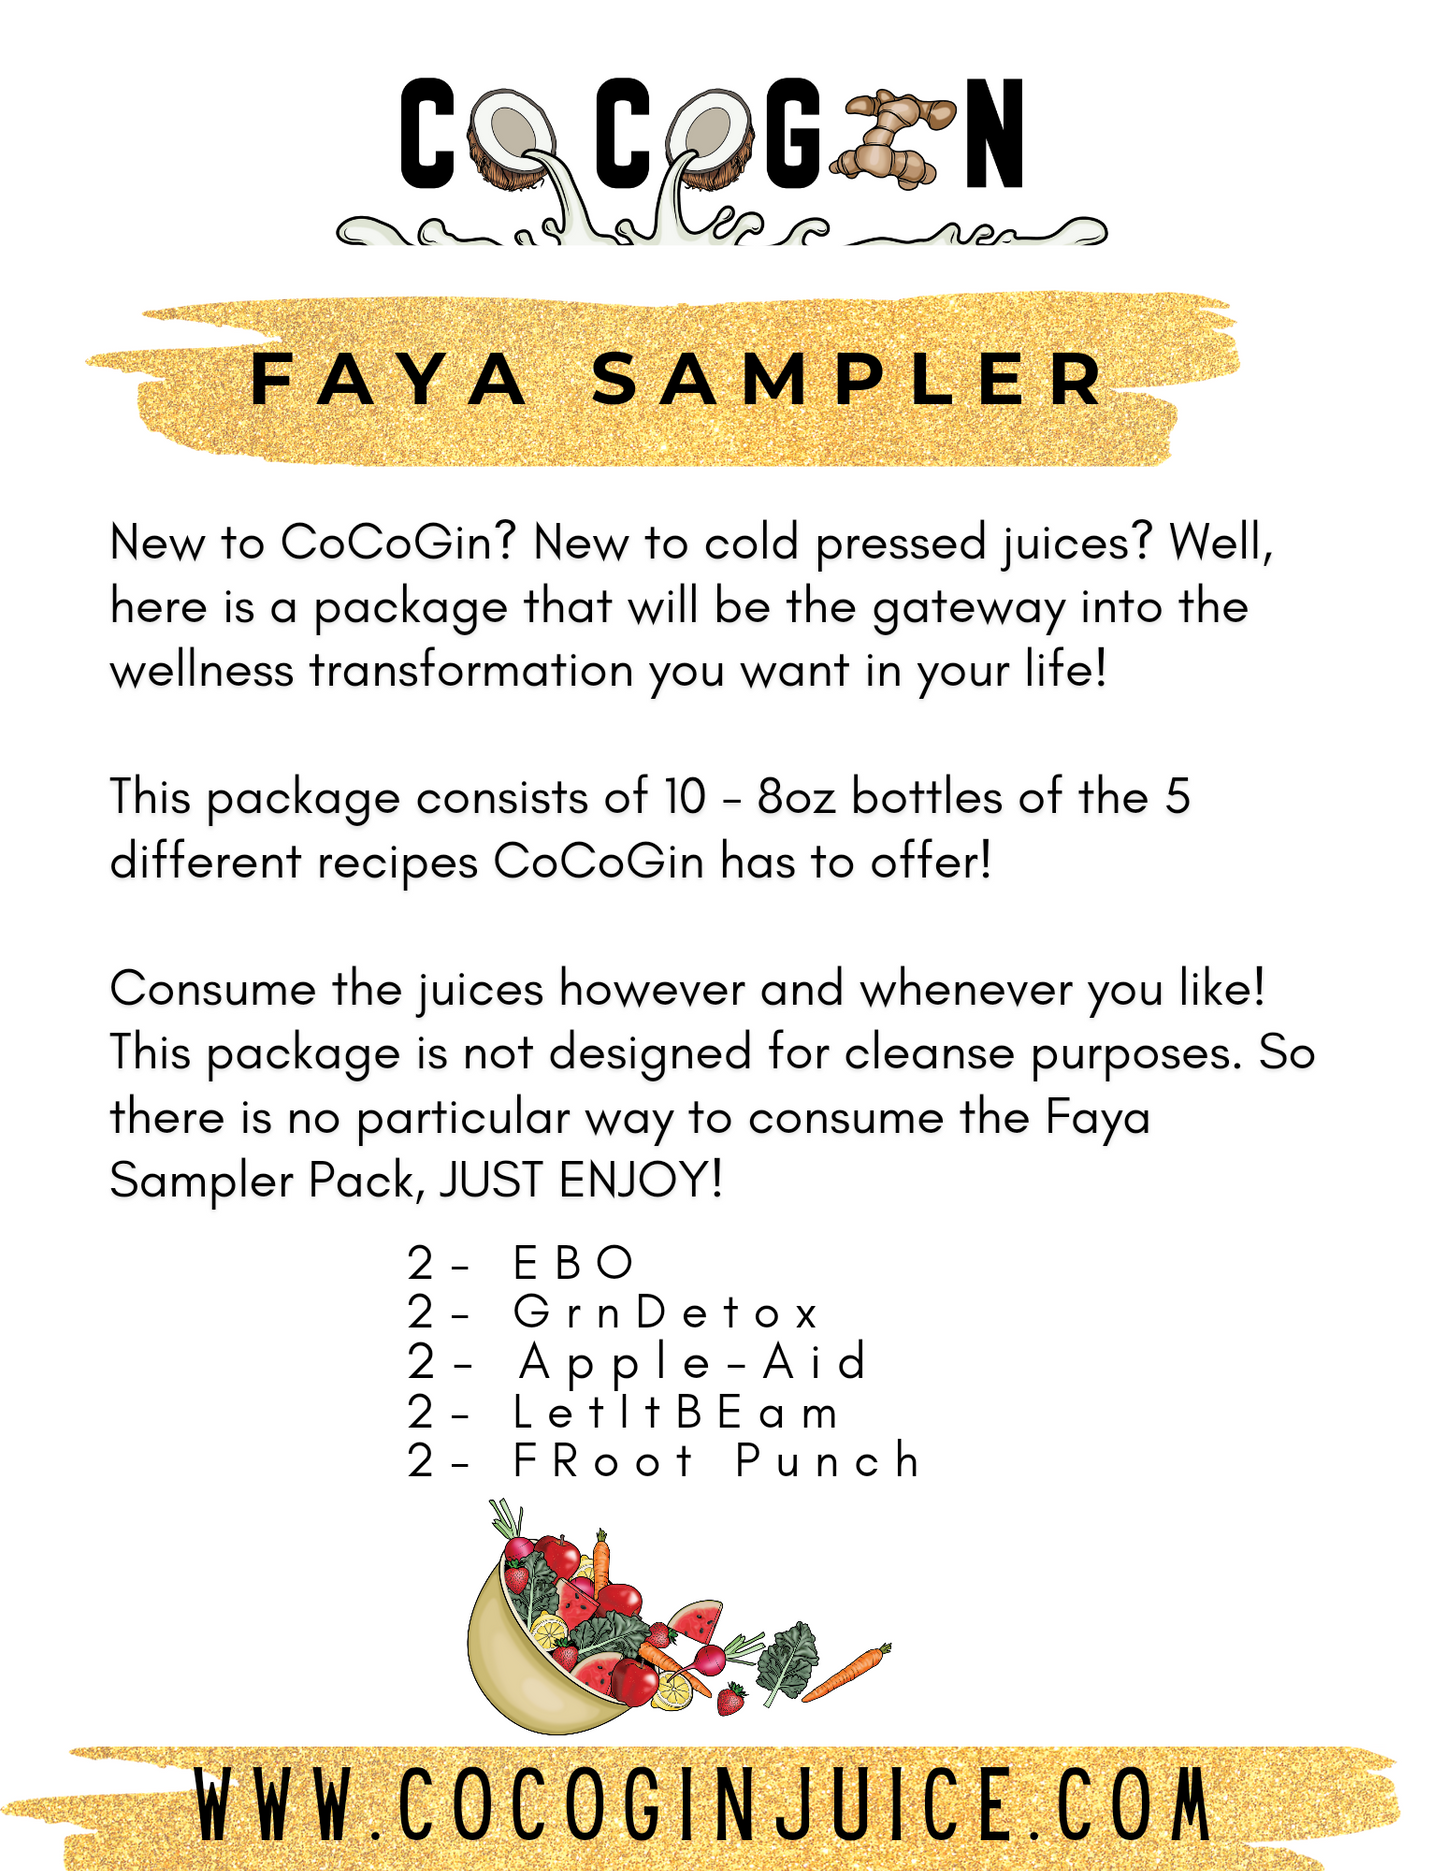 Faya Sampler Pack